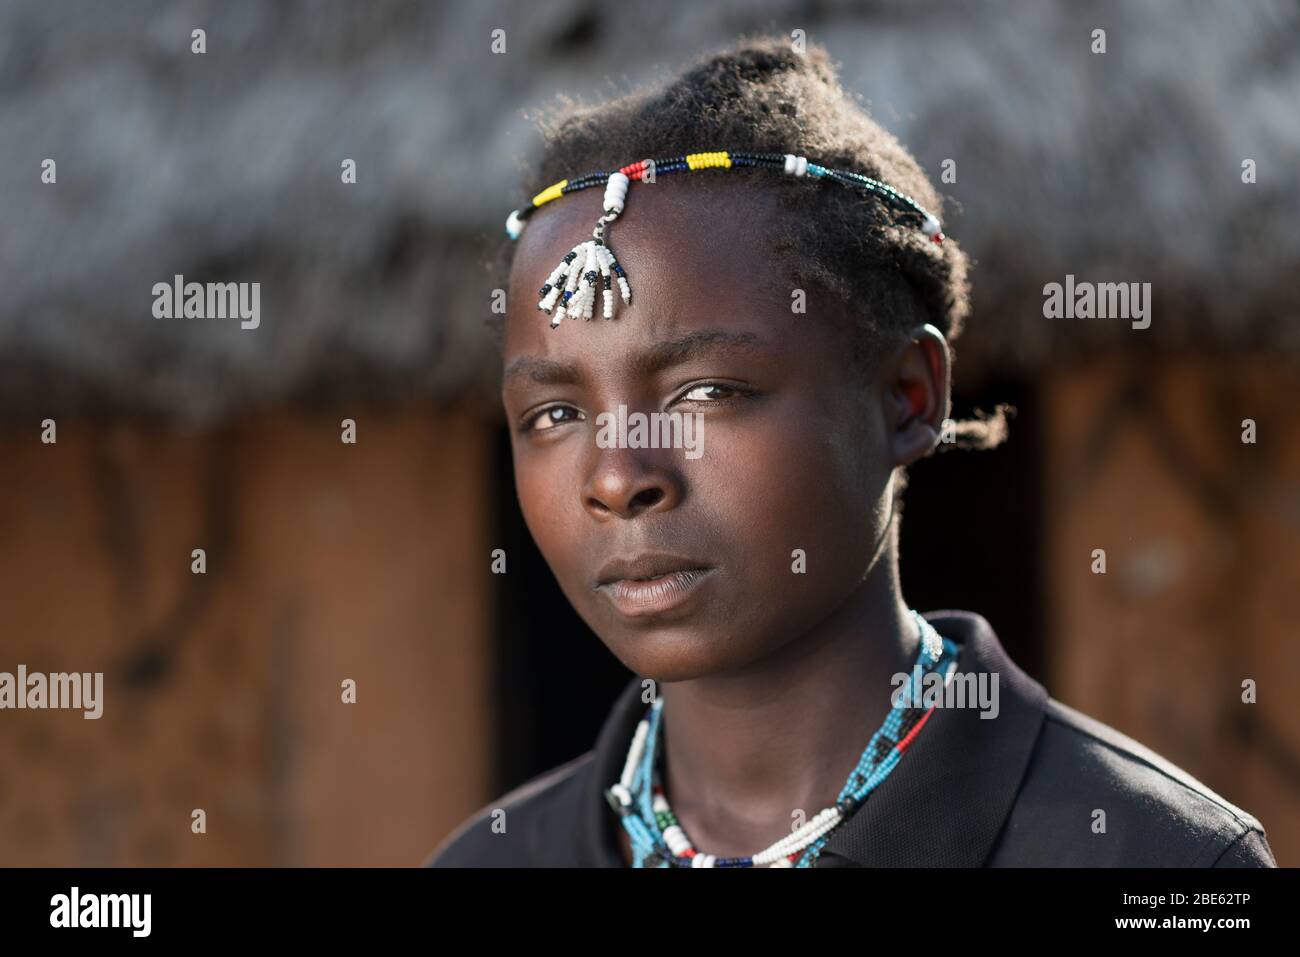 Junge Frau mit Perlen, die für ihre Ari-Ethnie oder ihren Stamm typisch sind, außerhalb ihres Schlammhauses, Jenka, Äthiopien. Stockfoto